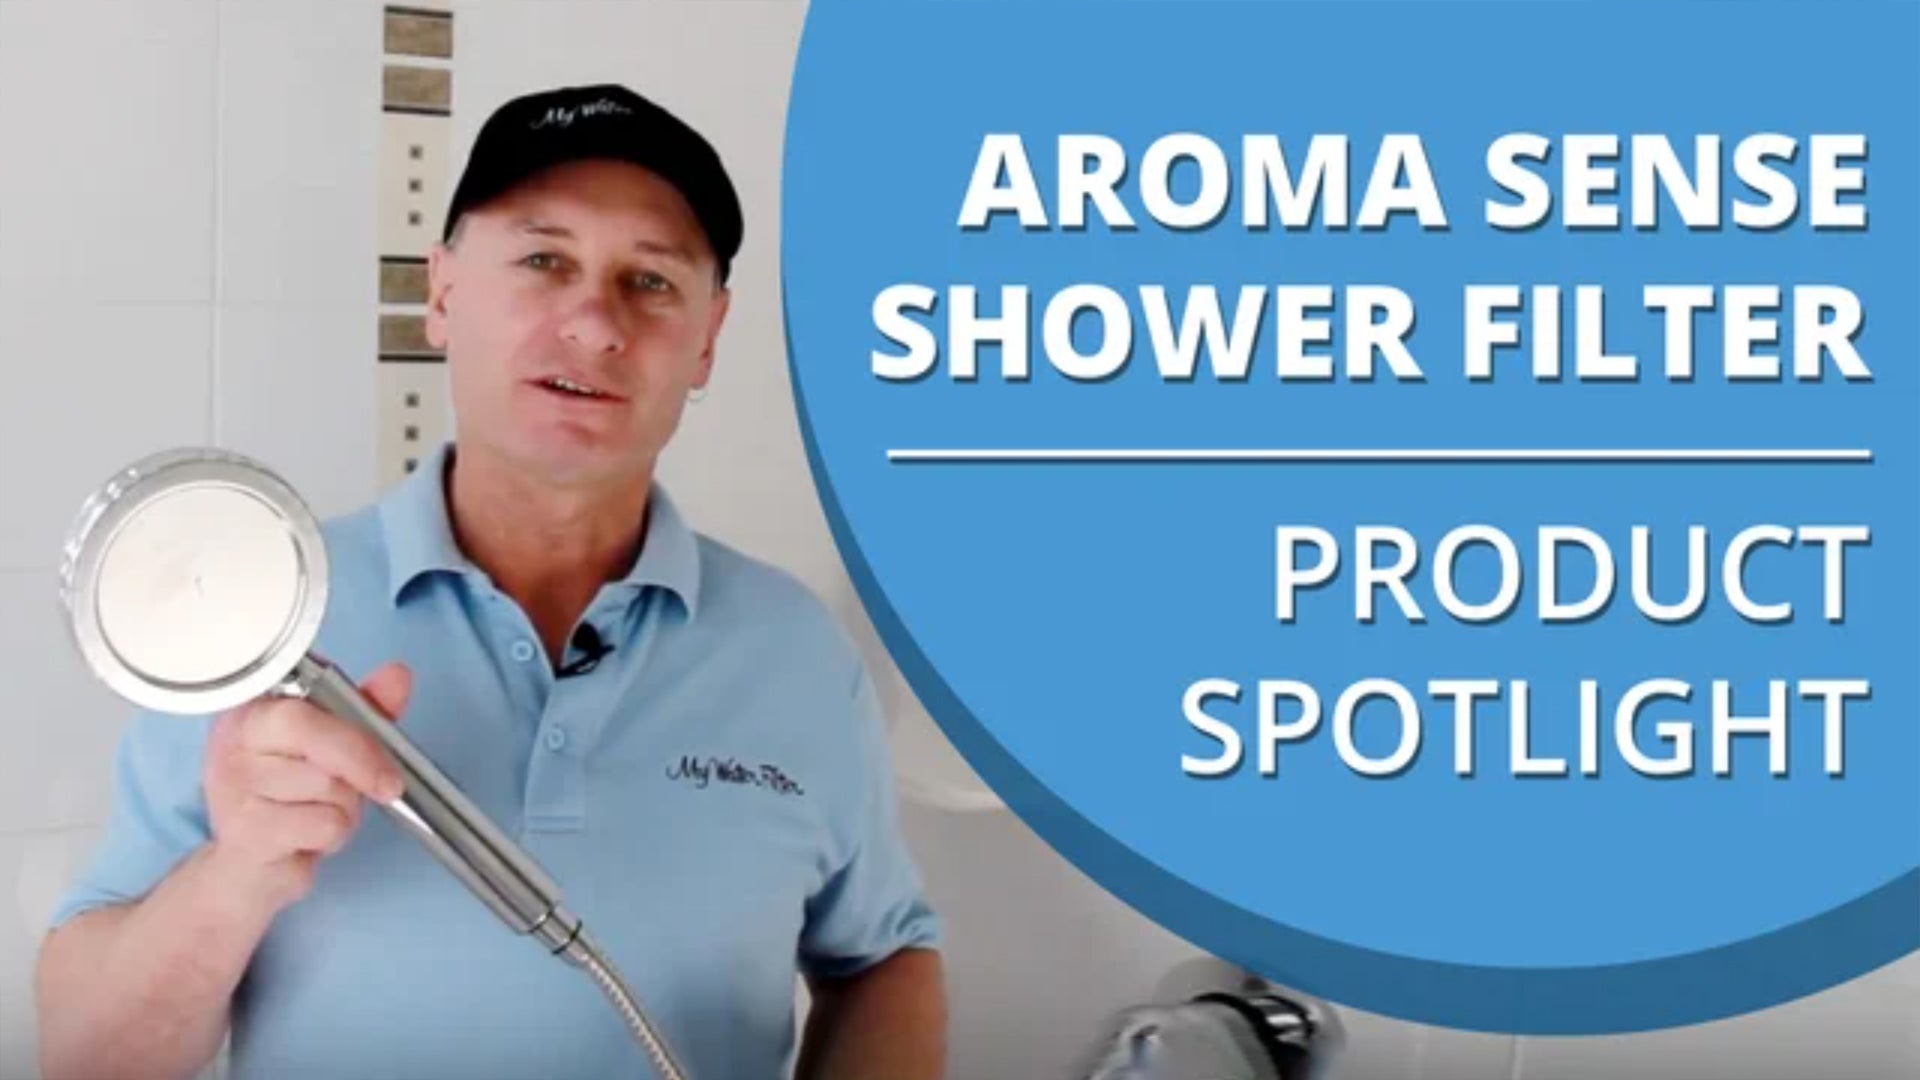 Aroma Sense Shower Filter Product Spotlight